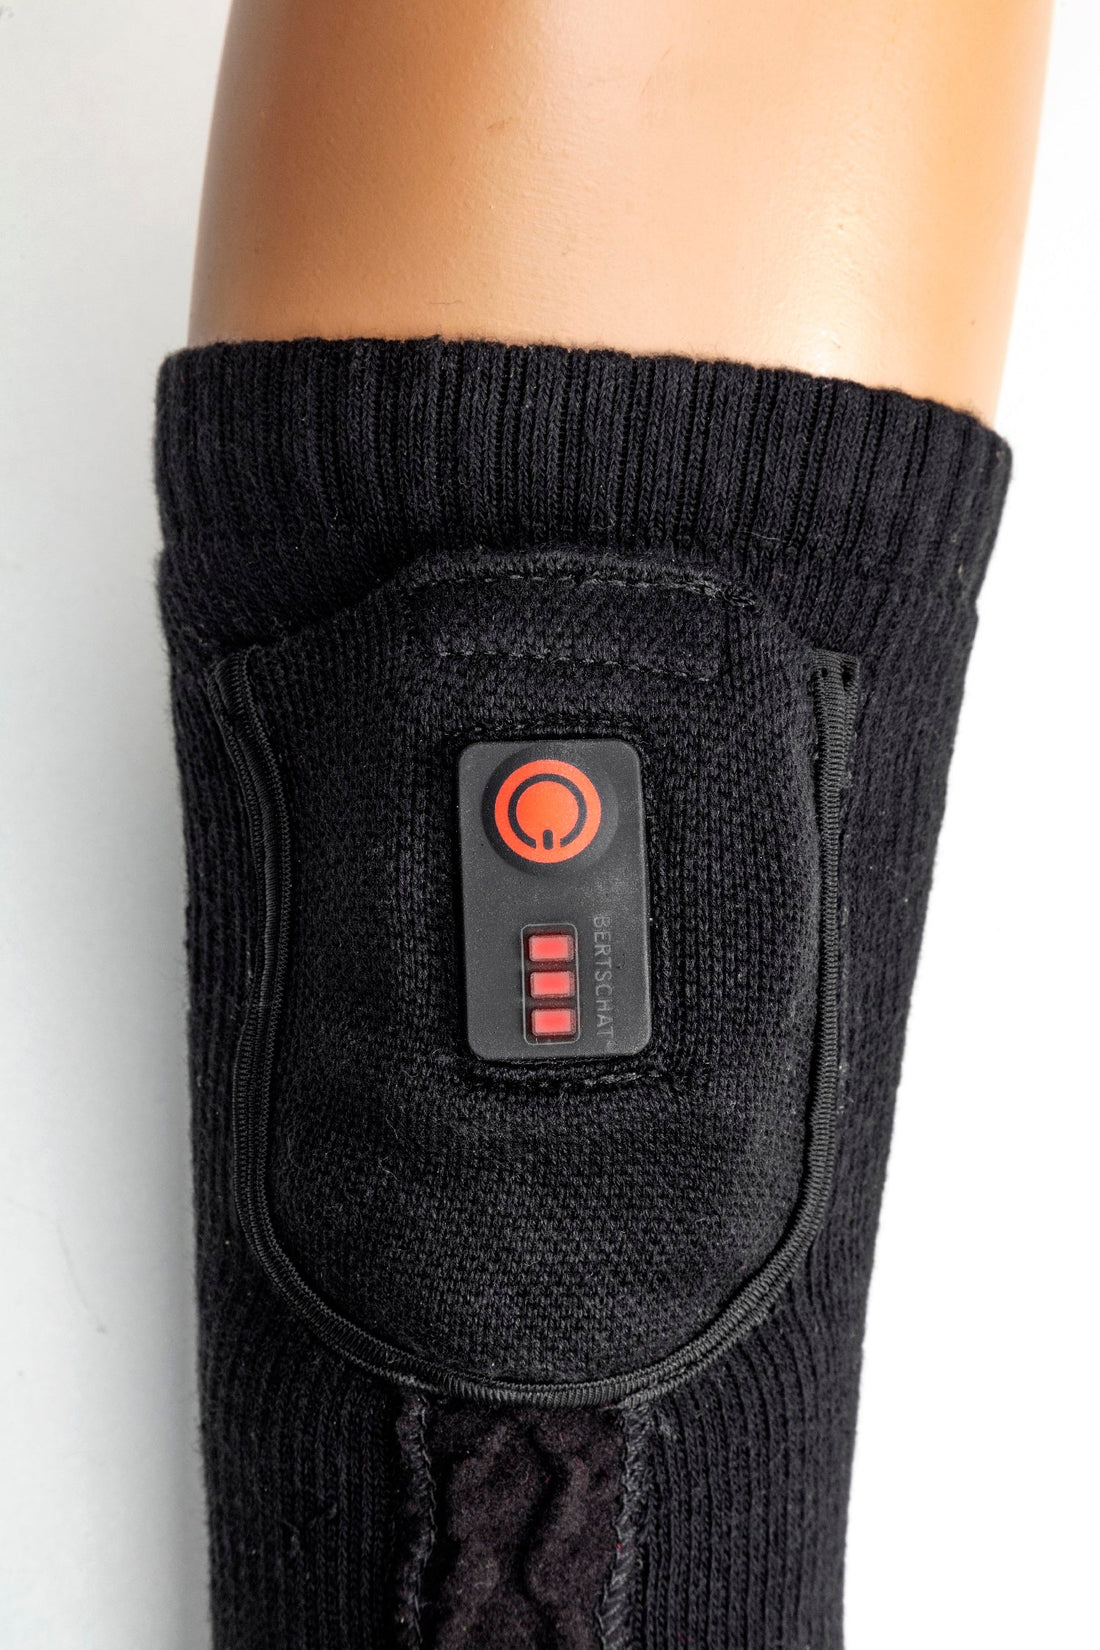 Beheizte Socken - Elite | USB – Hiking Edition